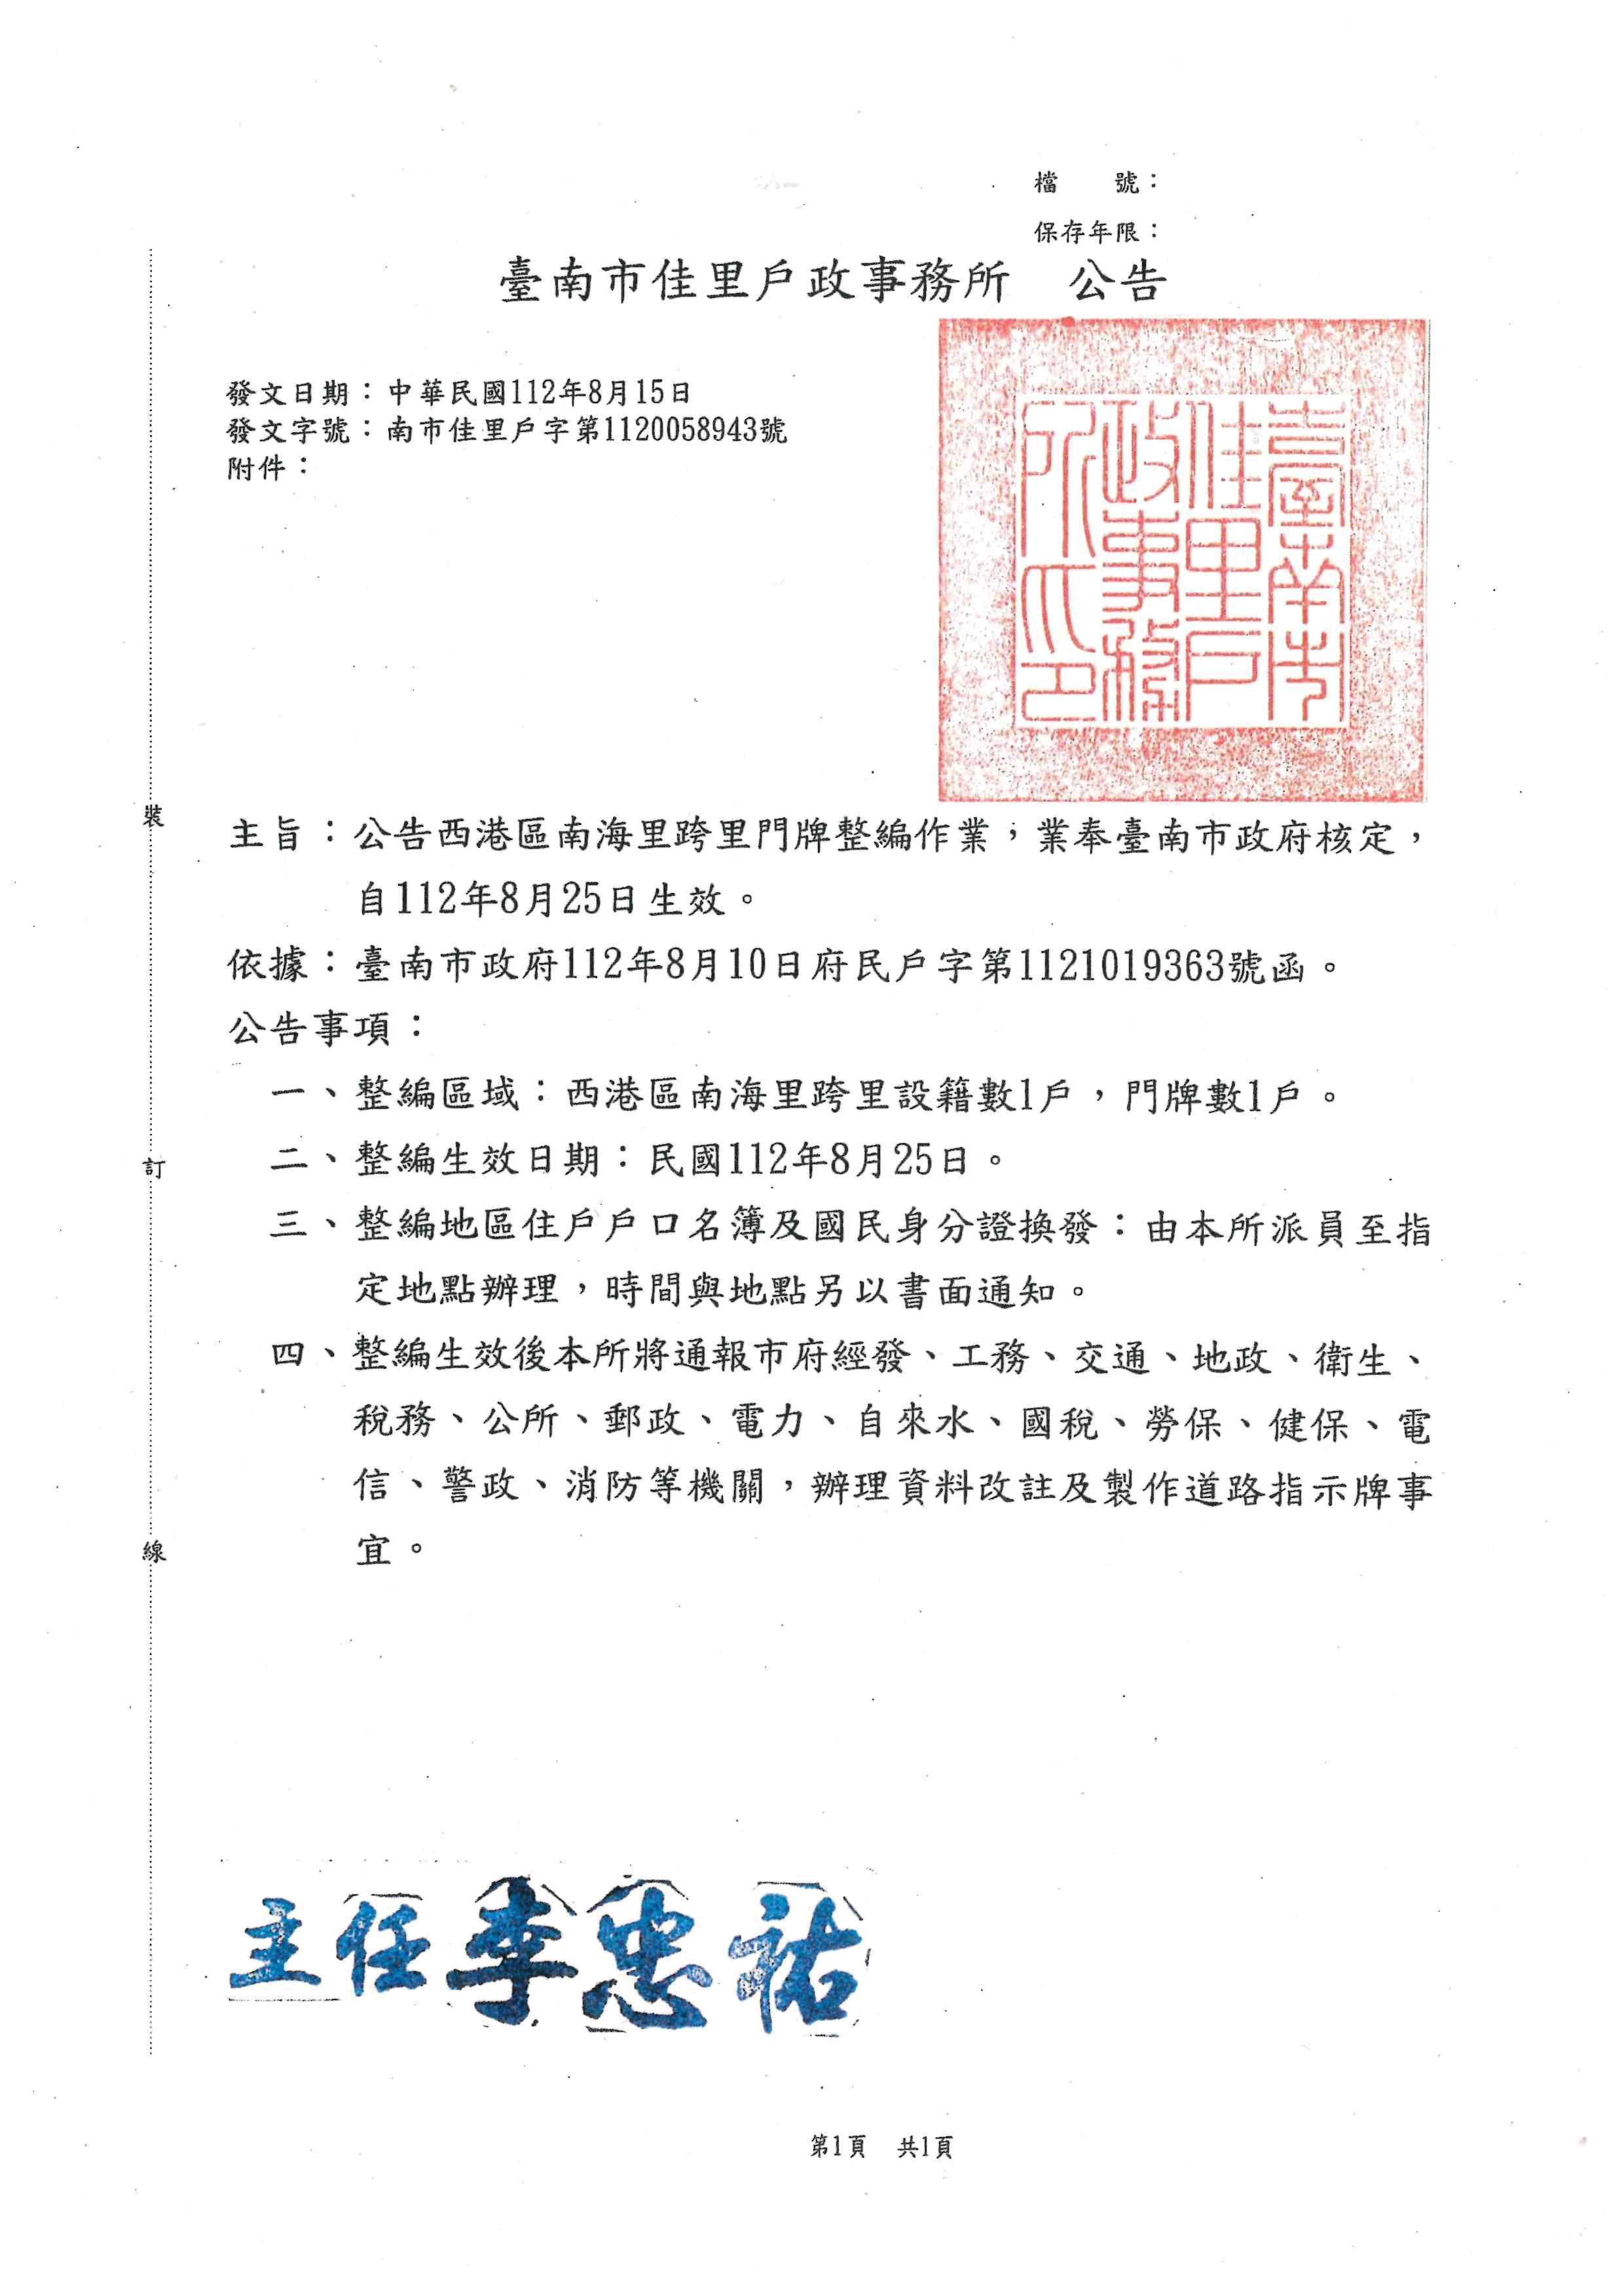 公告臺南市西港區南海里跨里門牌整編作業，業奉臺南市政府核定，自112年8月25日生效。